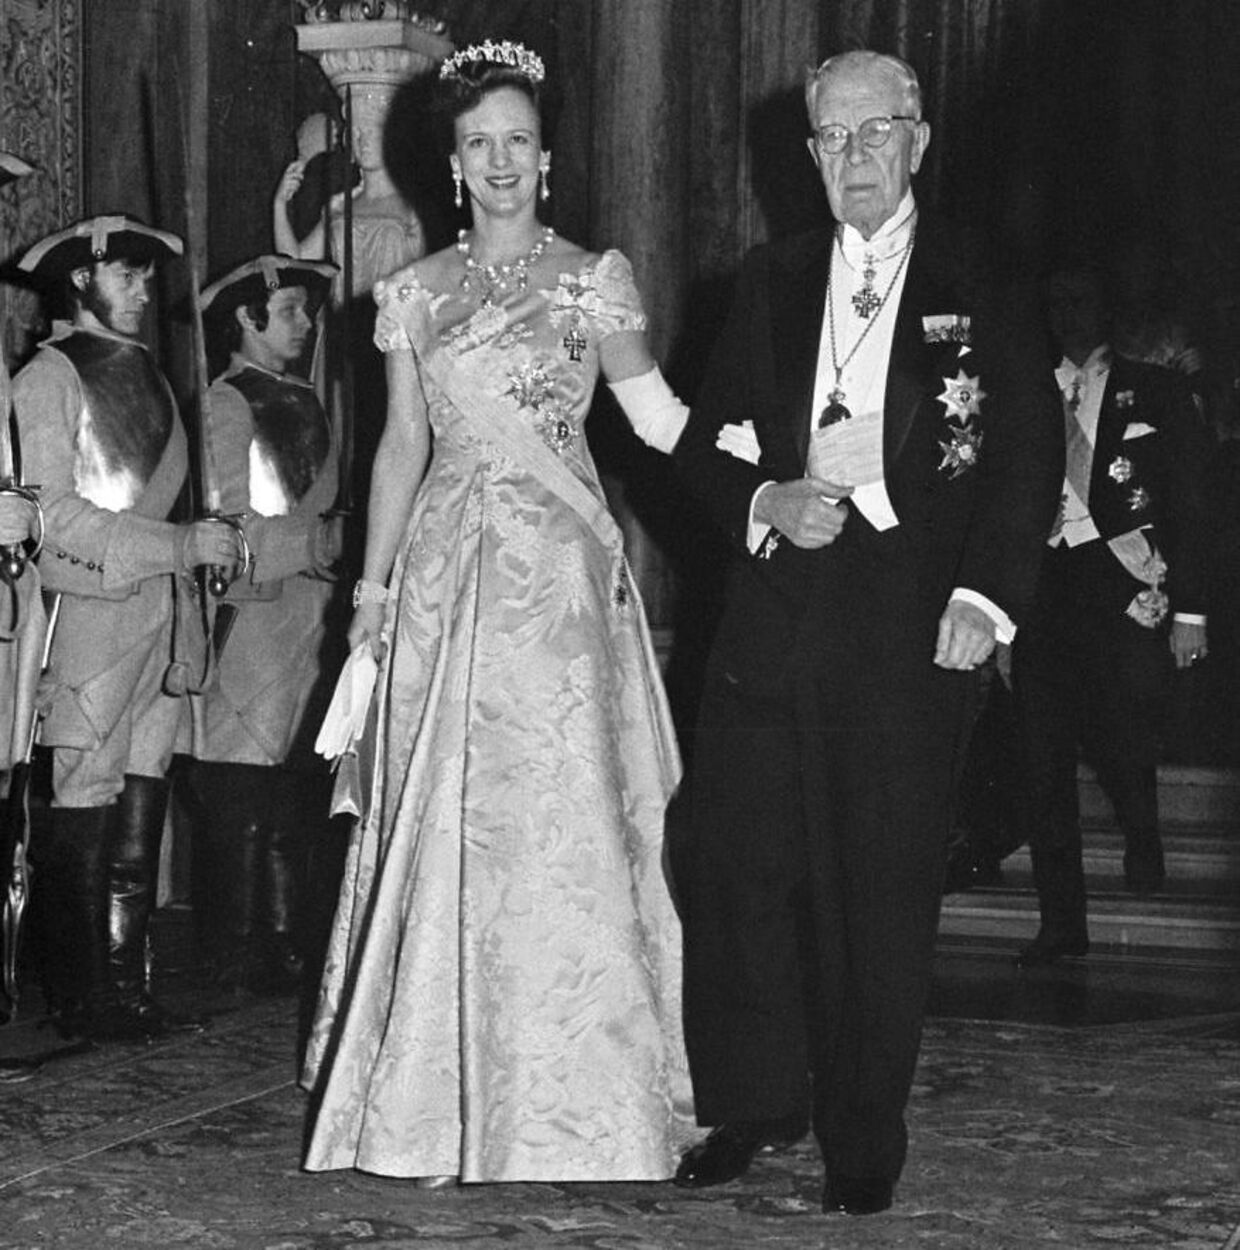 Dronning Margrethe med sin morfar, kong Gustav 6. Adolf af Sverige.